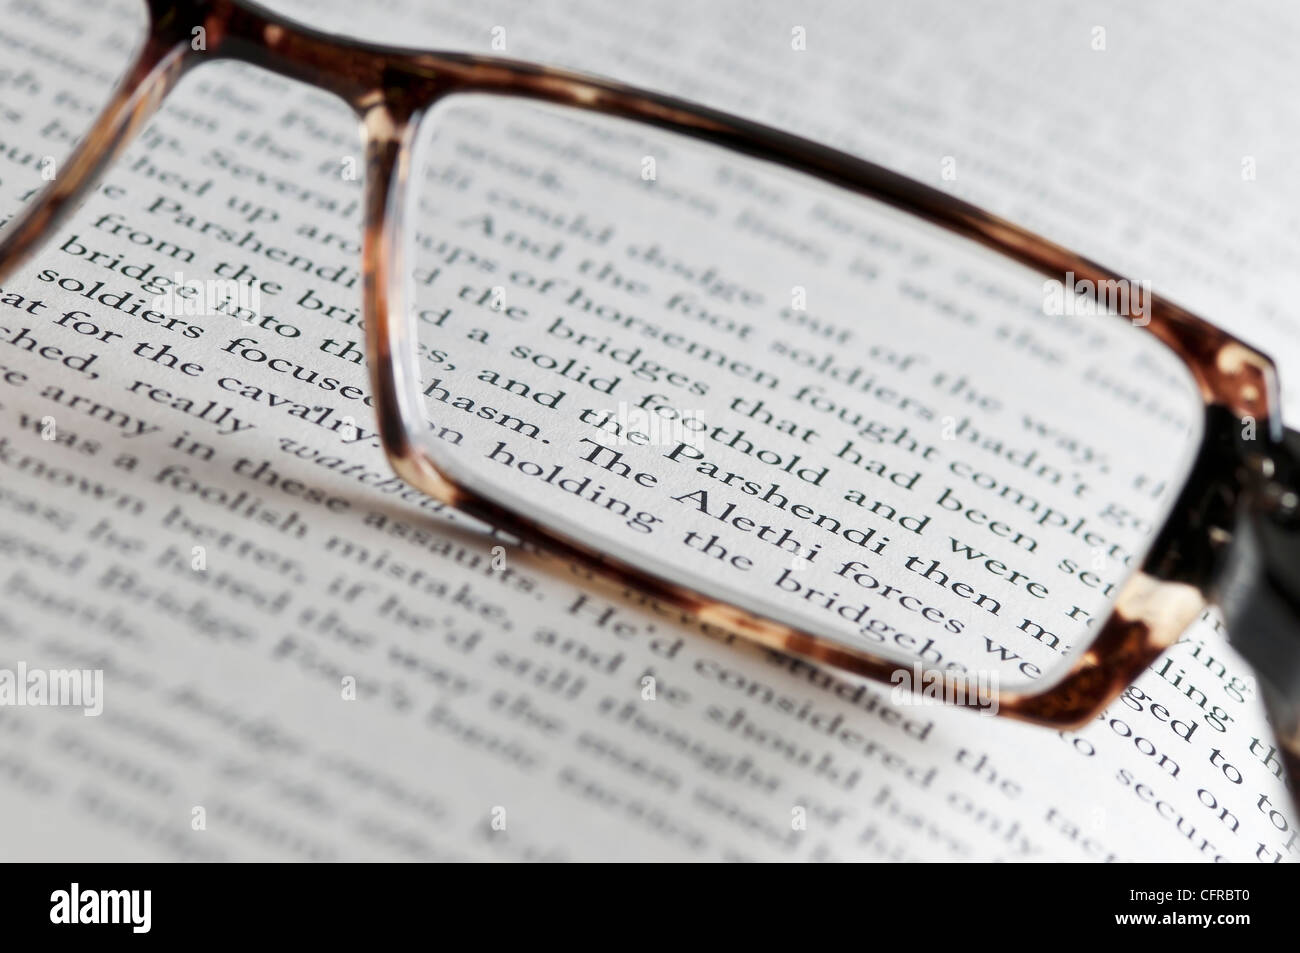 El texto de un libro vistos a través de gafas de lectura. Foto de stock